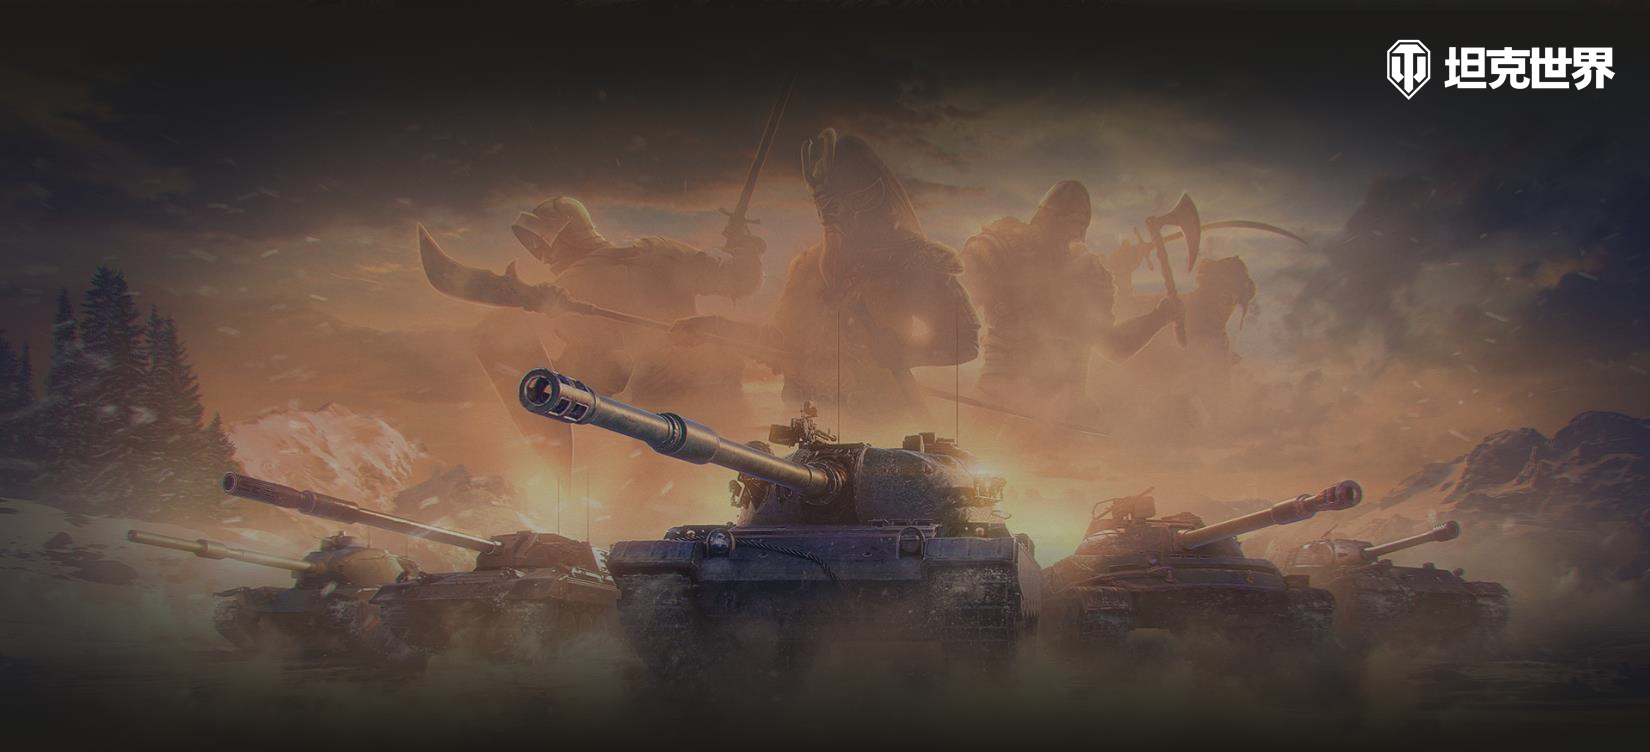 《坦克世界》全新1.19.1版本更新 《终结者2》电影联动章节即将上线